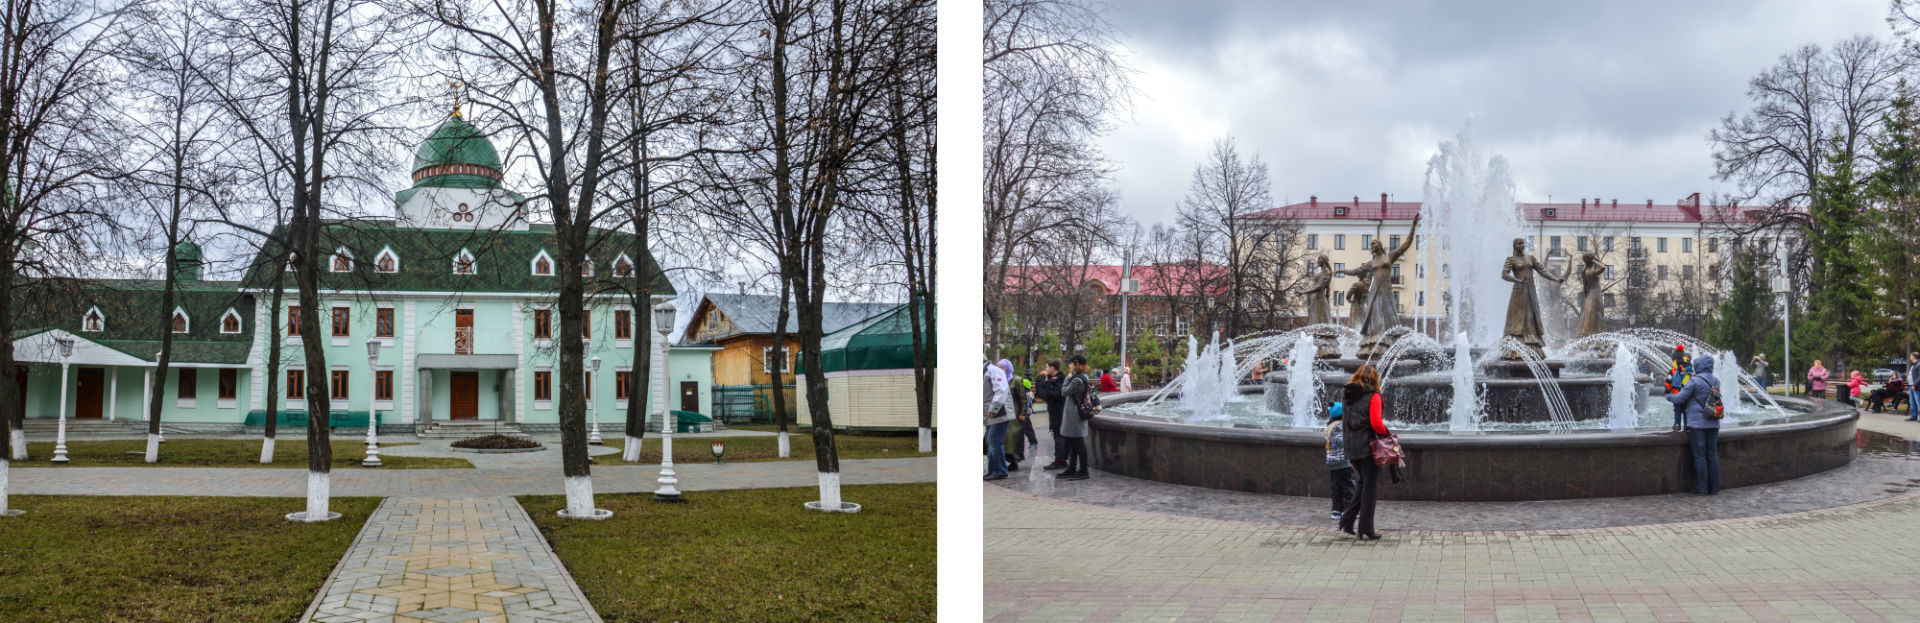 À gauche, l'un des bâtiments du complexe religieux, à droite, la fontaine des 7 jeunes filles.